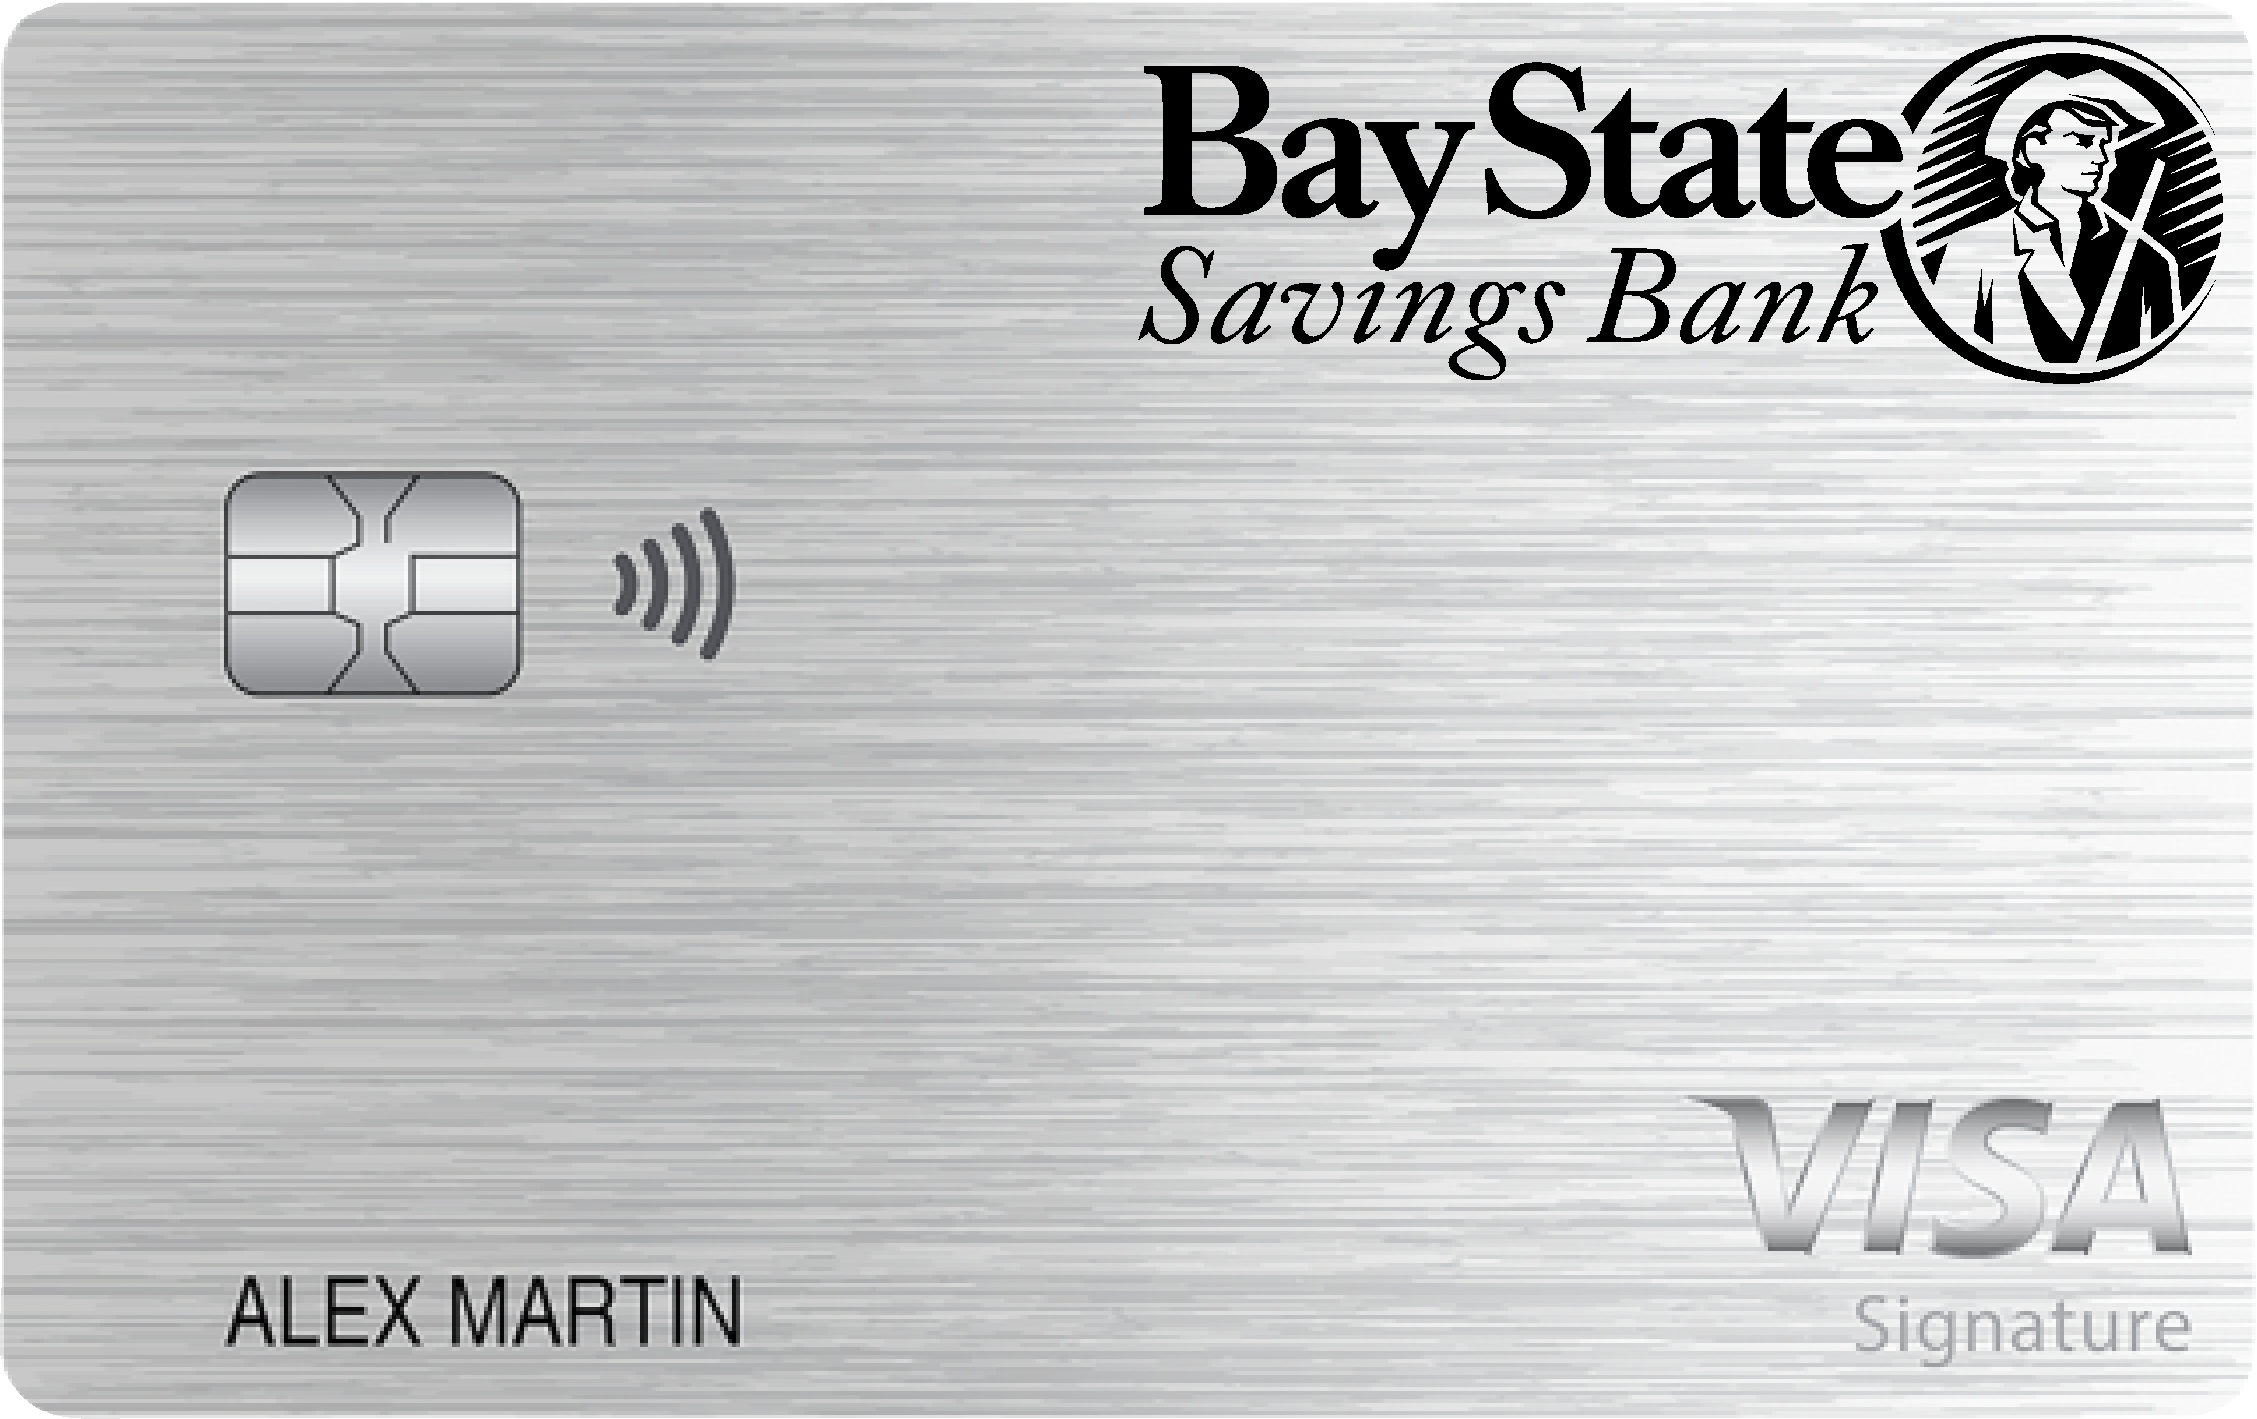 Bay State Savings Bank Travel Rewards+ Card